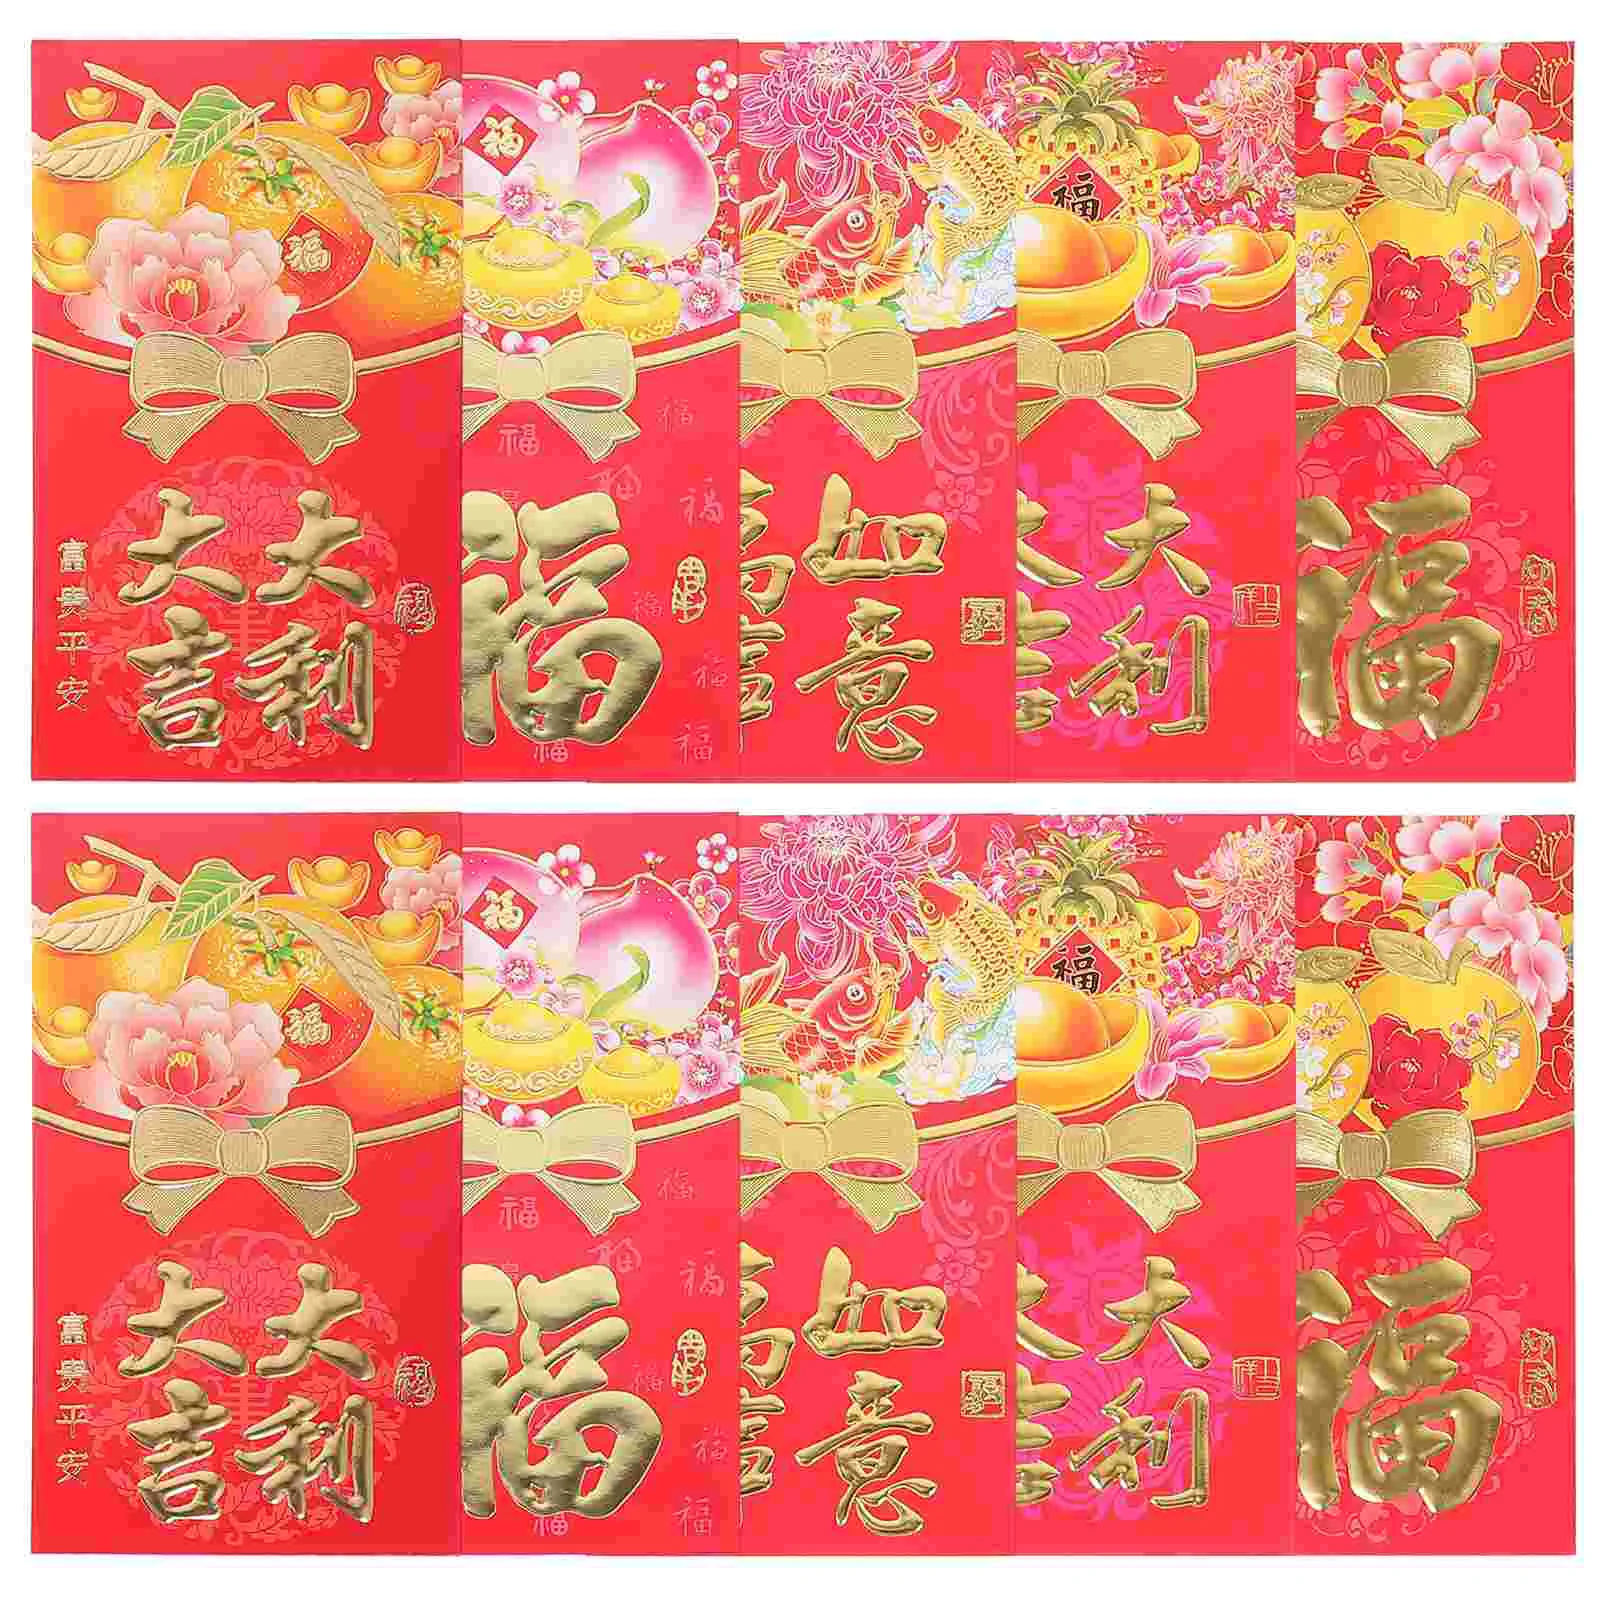 

50 шт. подарочные красные конверты в китайском стиле, карманы для денег в виде знаков зодиака, бумажные пакеты для нового года, праздника Весны, традиционный пакет